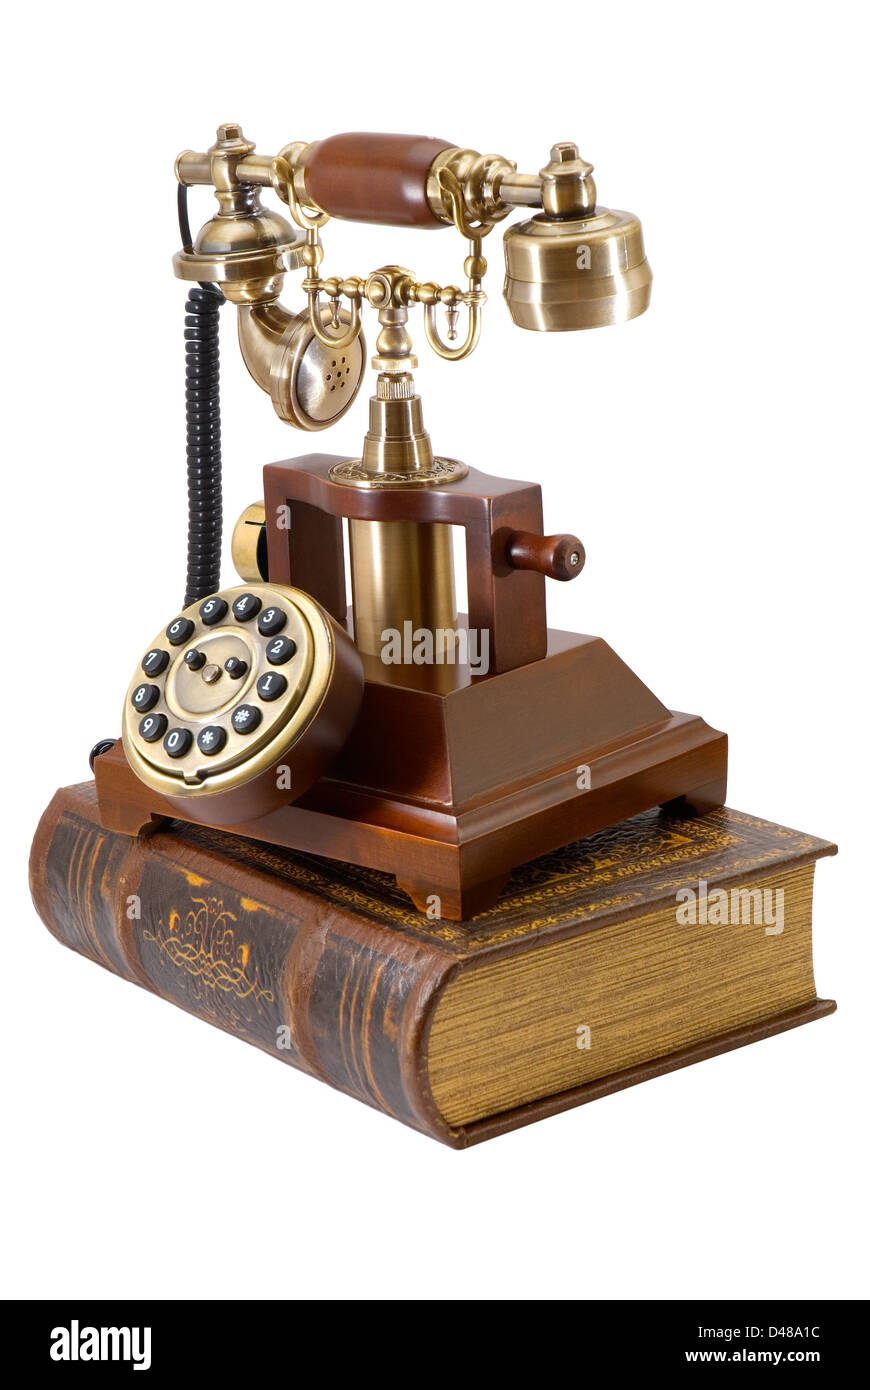 Antico telefono e prenota sono fotografati sullo sfondo bianco Foto Stock